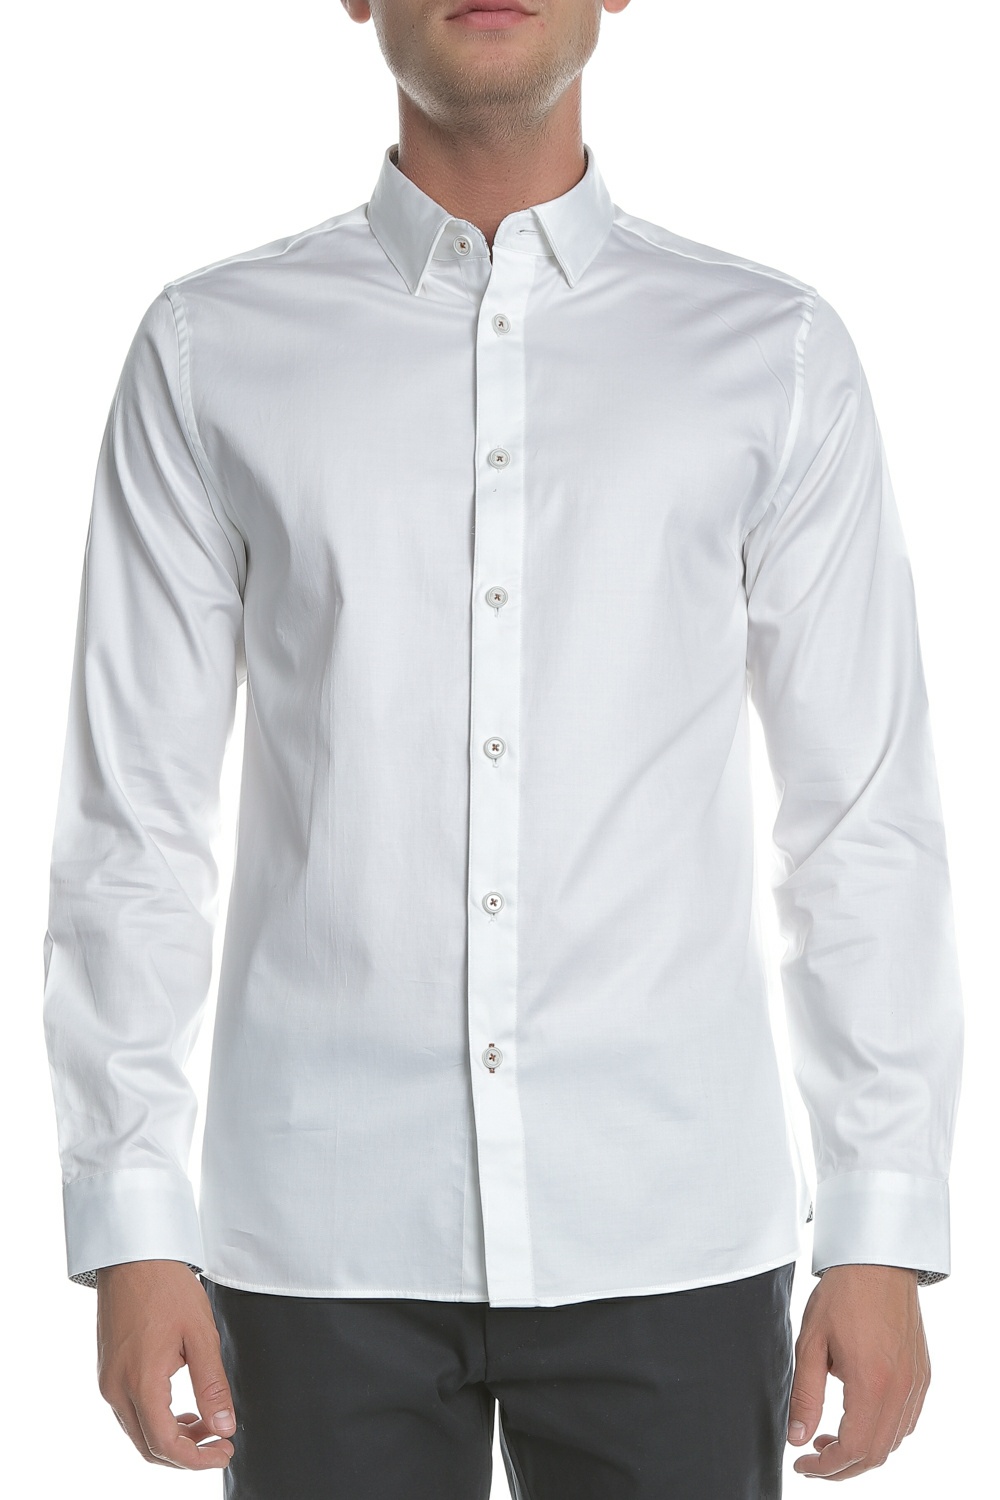 Ανδρικά/Ρούχα/Πουκάμισα/Μακρυμάνικα TED BAKER - Ανδρικό μακρυμάνικο πουκάμισο PLATEEN LS λευκό